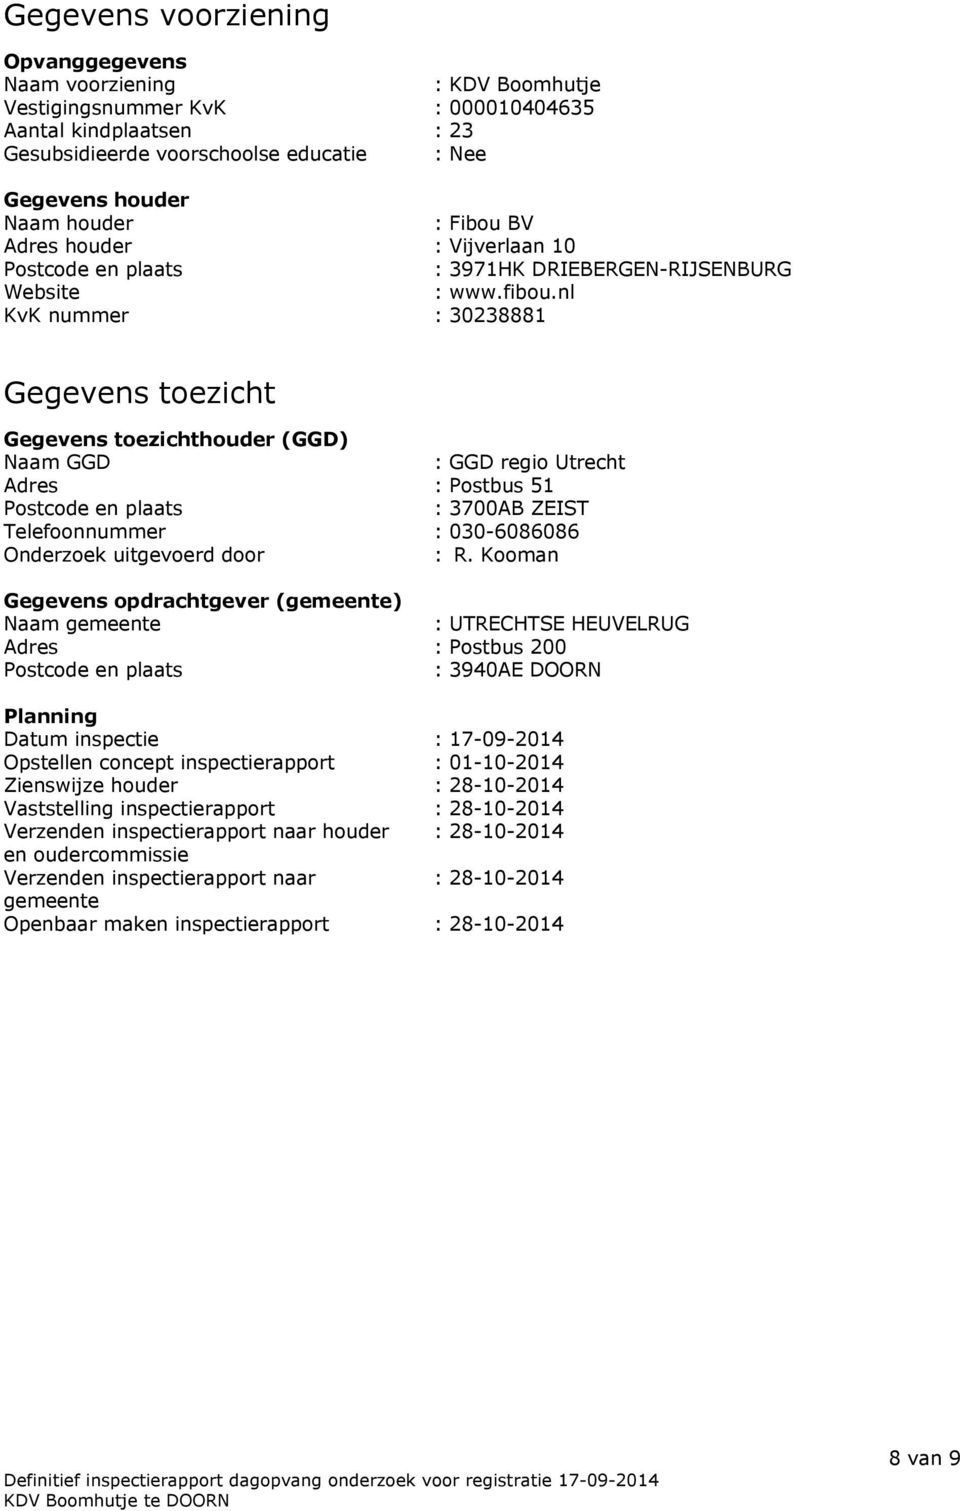 nl KvK nummer : 30238881 Gegevens toezicht Gegevens toezichthouder (GGD) Naam GGD : GGD regio Utrecht Adres : Postbus 51 Postcode en plaats : 3700AB ZEIST Telefoonnummer : 030-6086086 Onderzoek